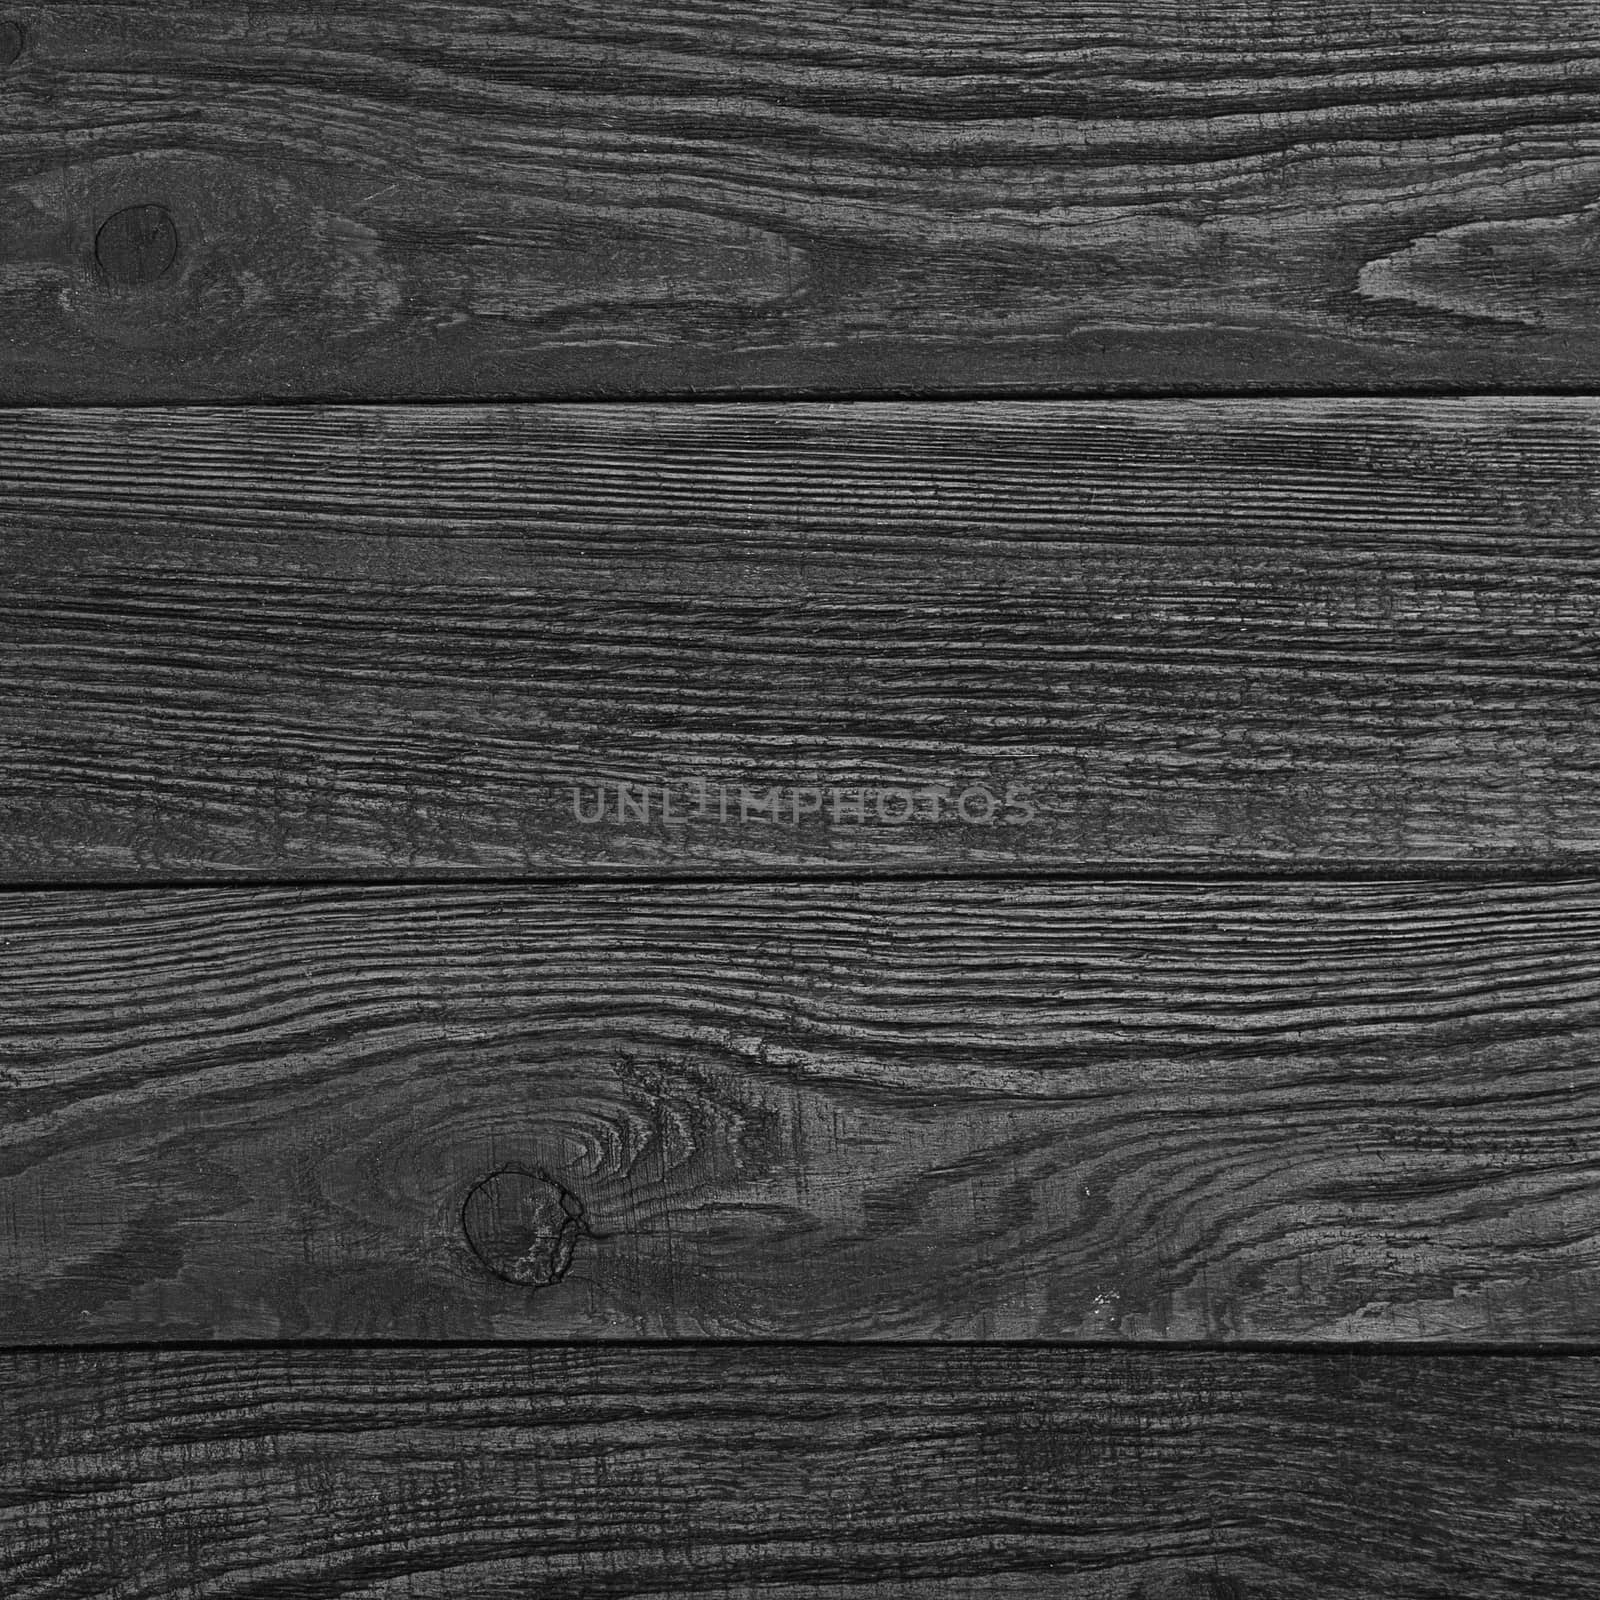 Grunge plank wood texture surface background by natazhekova